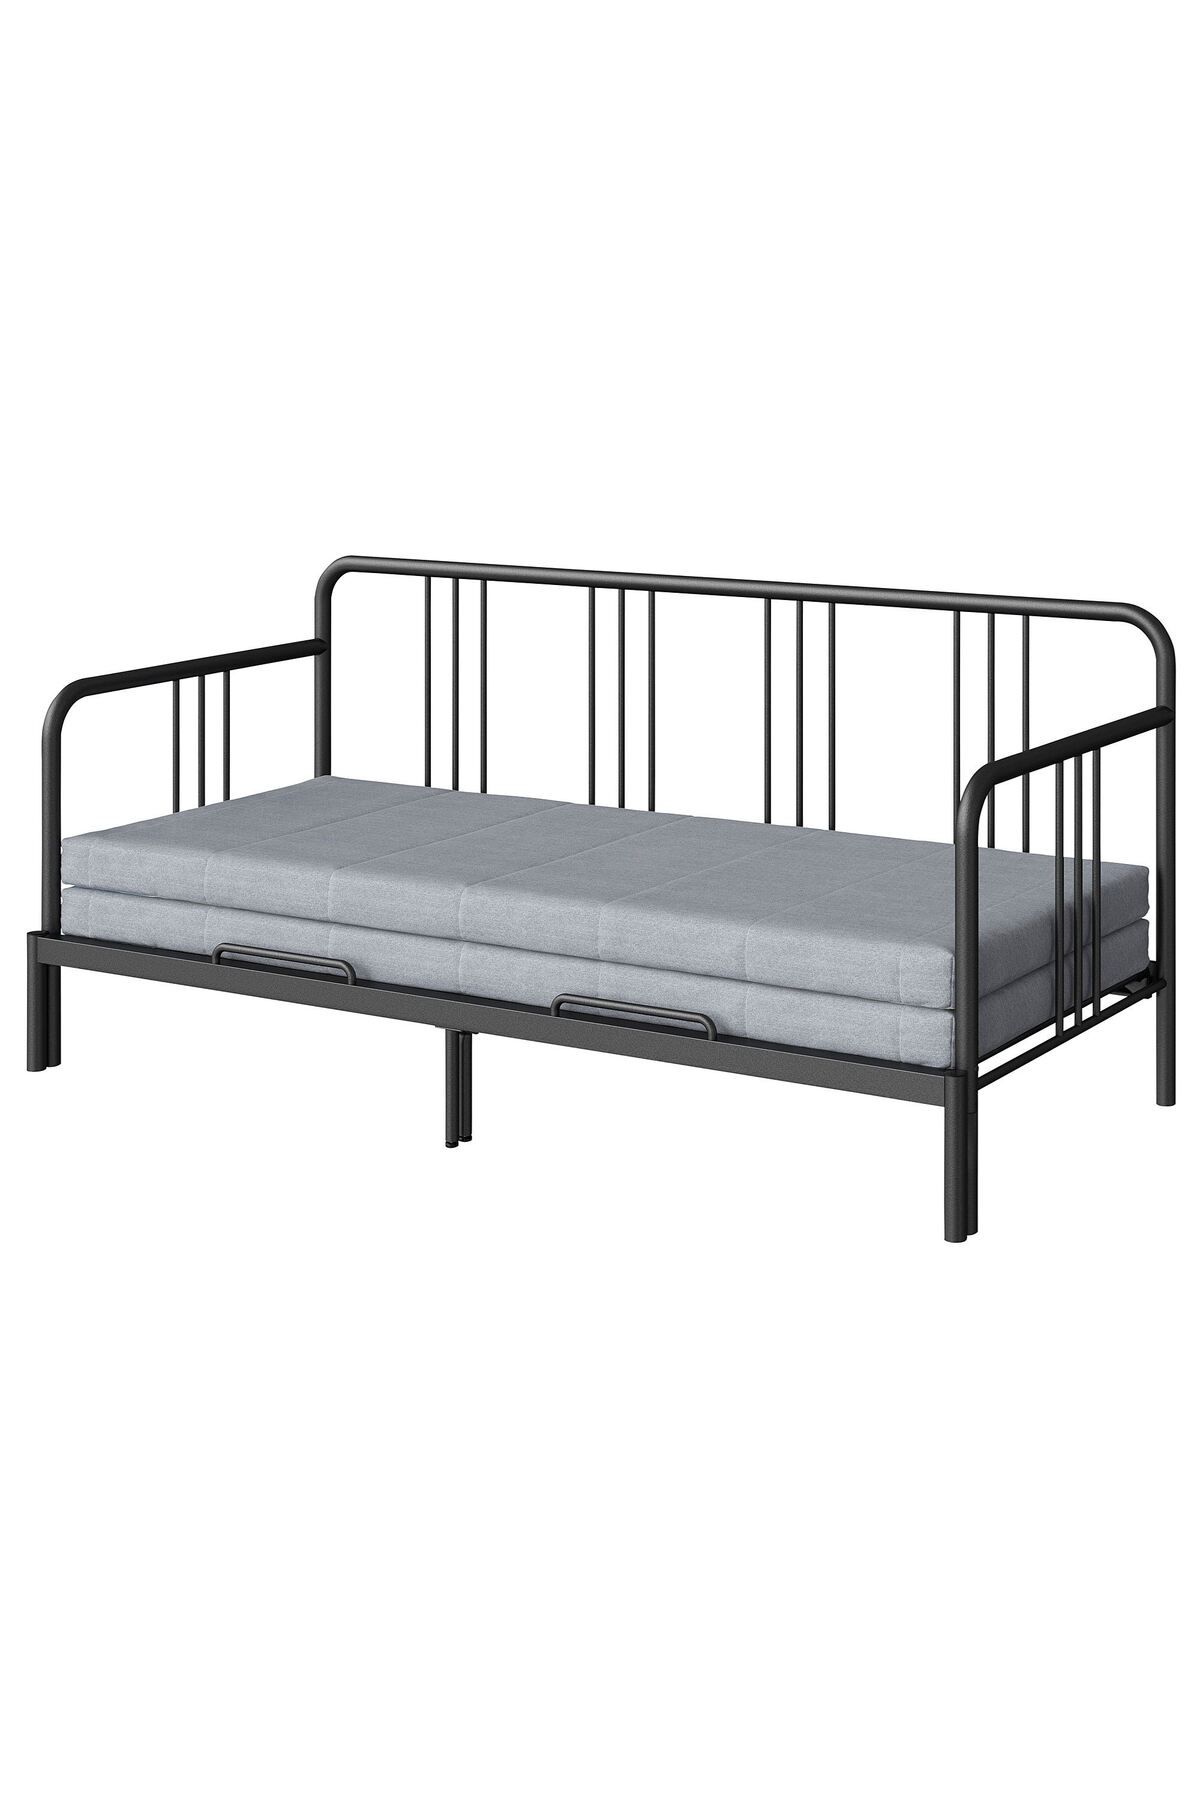 IKEA divan, siyah, 80x200 cm, sert